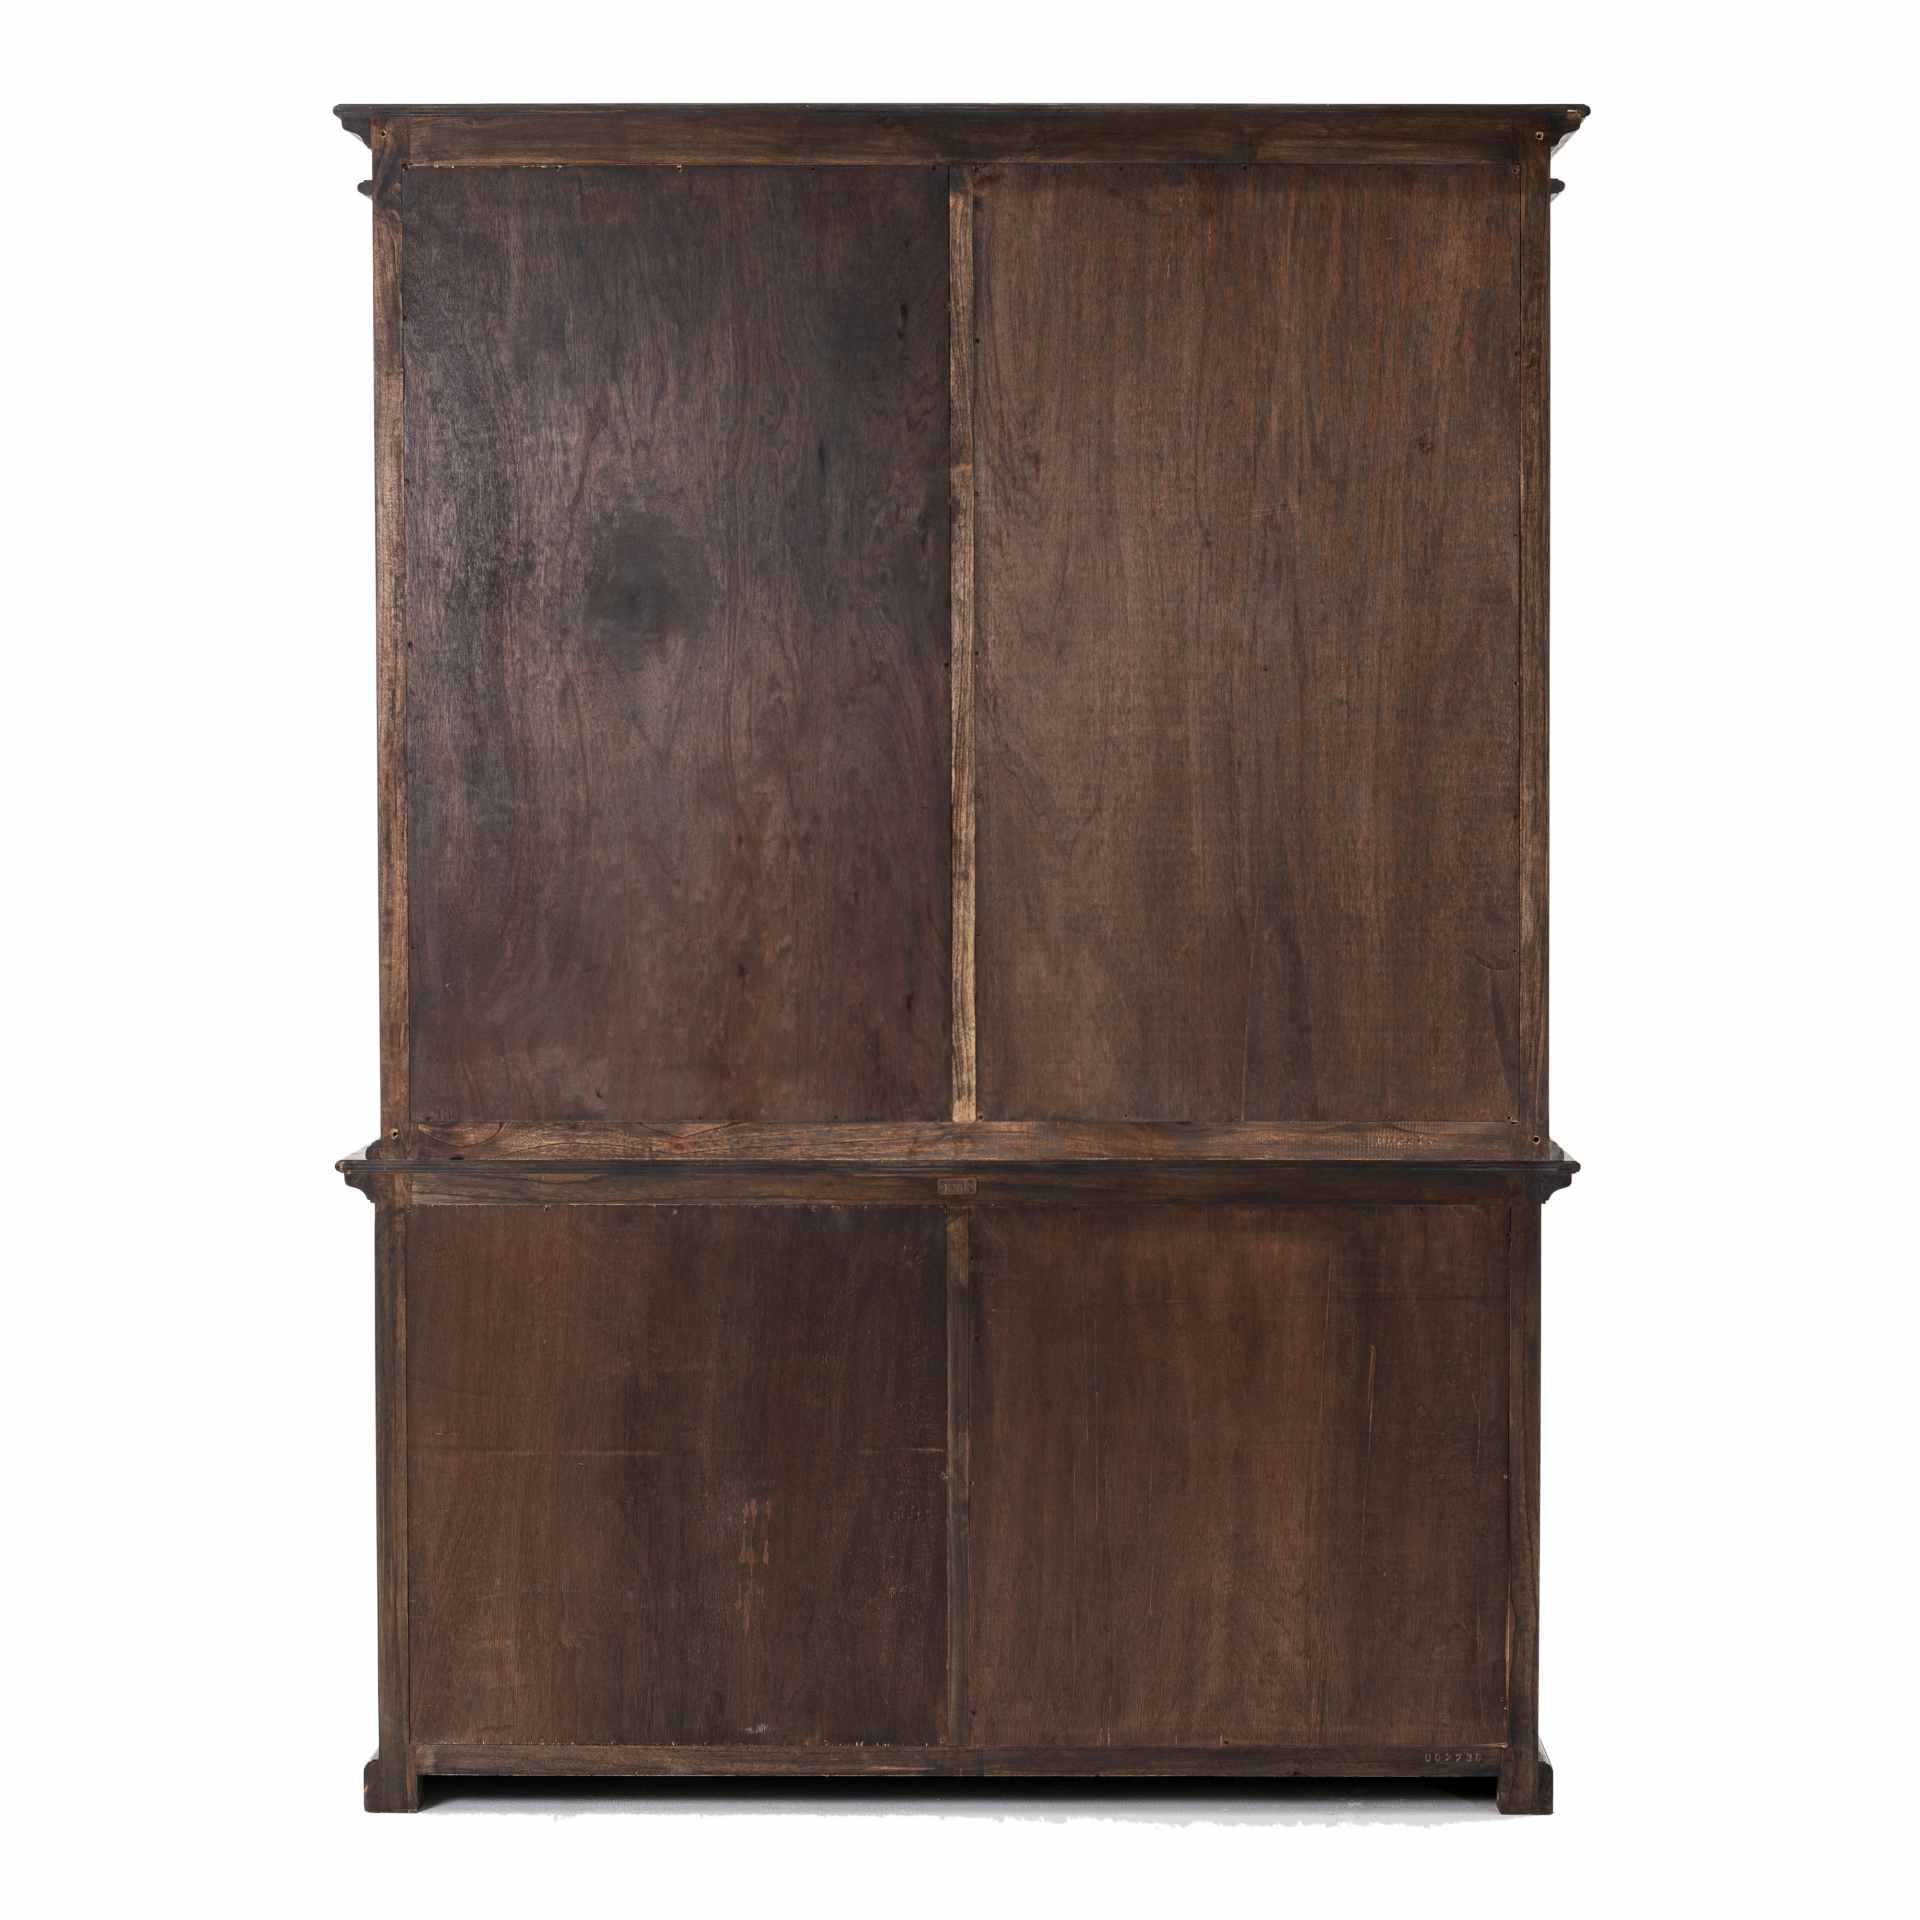 Der Bücherschrank Halifax Mindi überzeugt mit seinem Landhaus Stil. Gefertigt wurde er aus Mindi Holz, welches einen braunen Farbton besitzt. Der Schrank verfügt über vier Türen, zwei Schubladen und acht offene Fächer. Die Breite beträgt 160 cm.